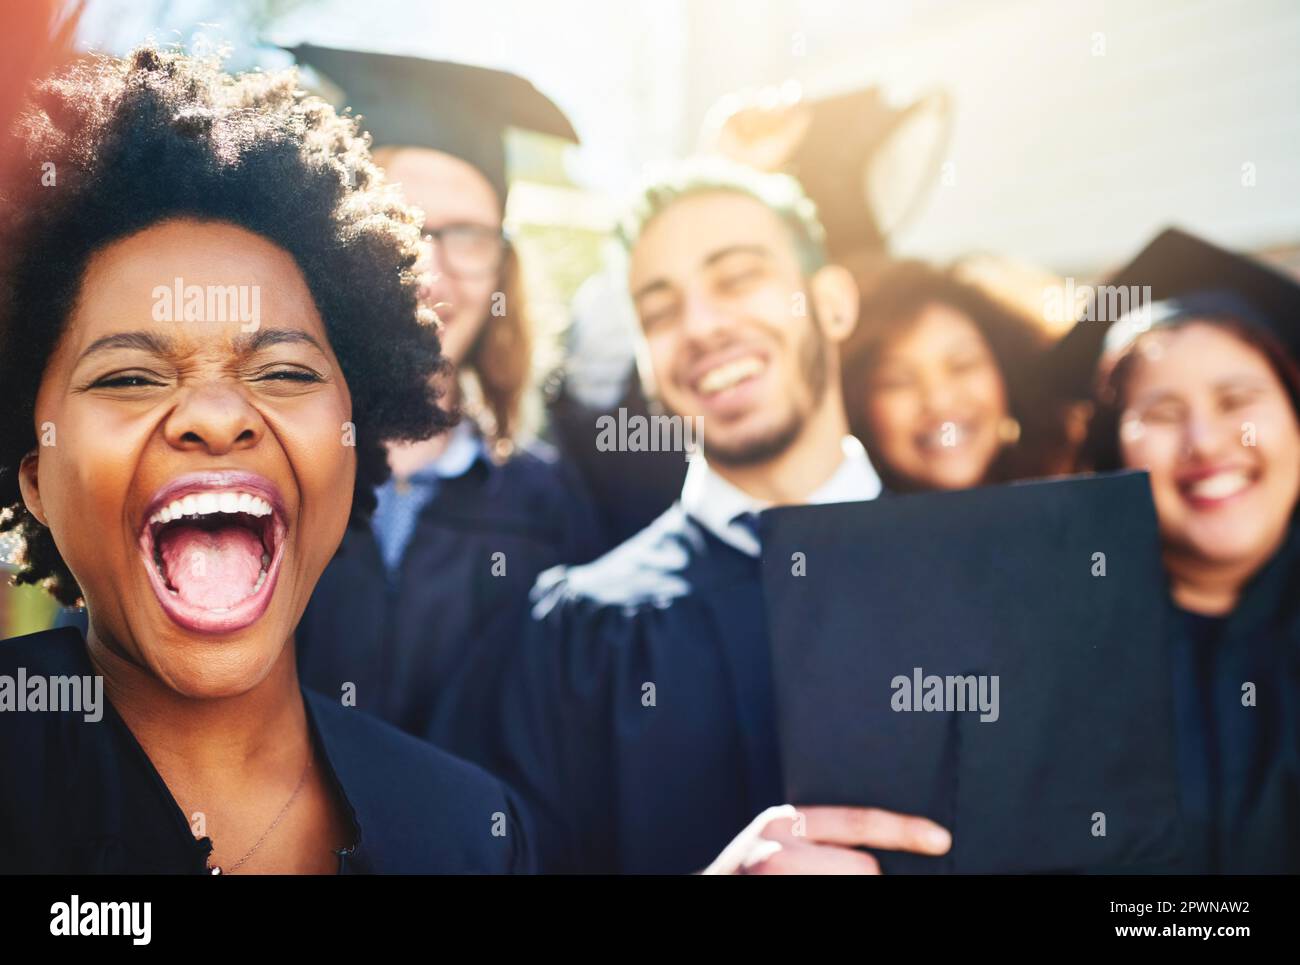 Non possiamo esprimere la nostra felicità abbastanza. un gruppo di studenti che prendono insieme un selfie Foto Stock